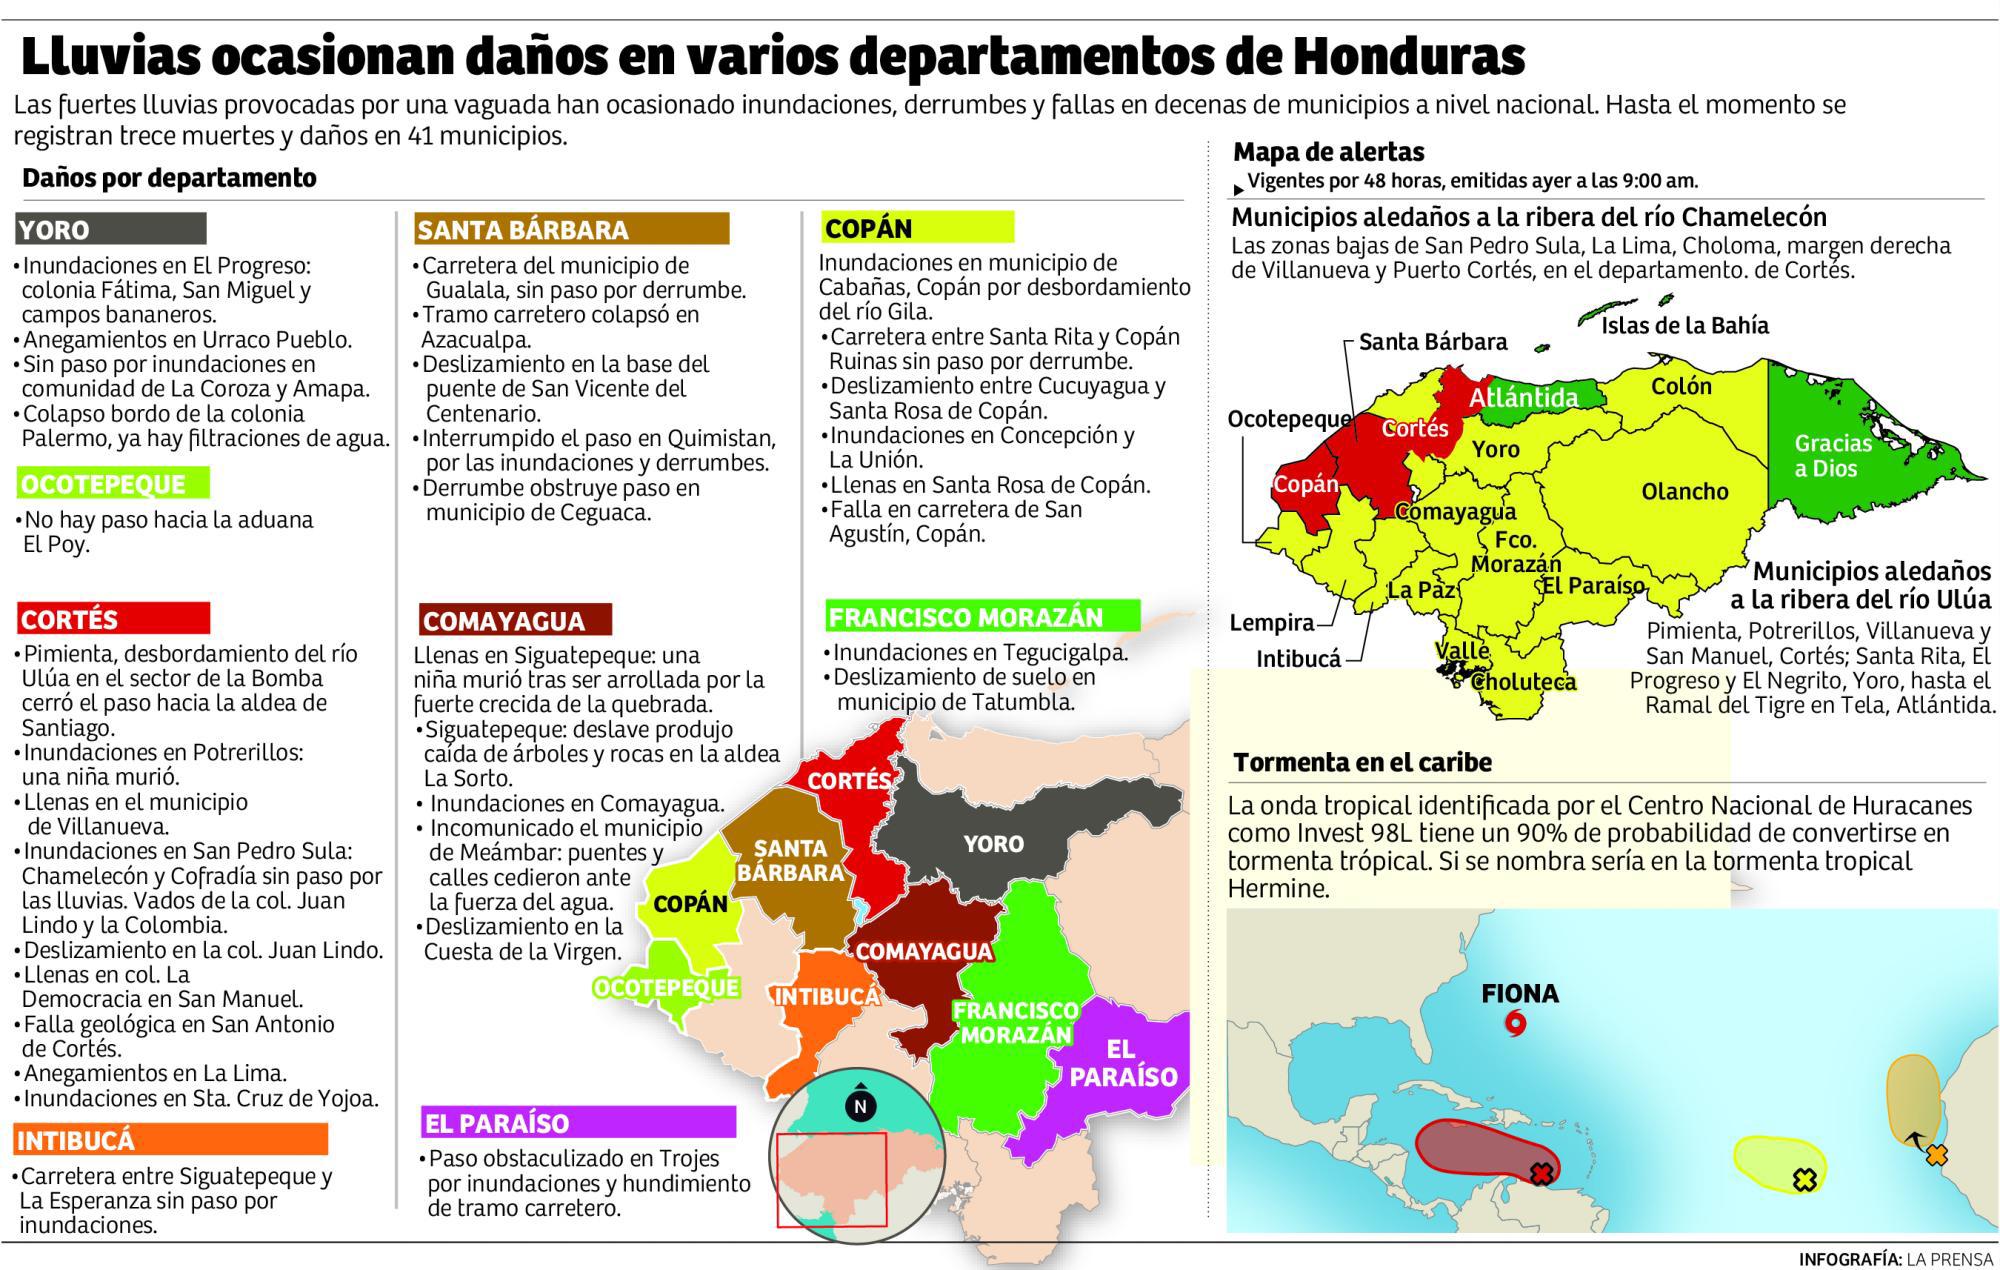 Lluvias ocasionan daños en varios departamentos de Honduras.